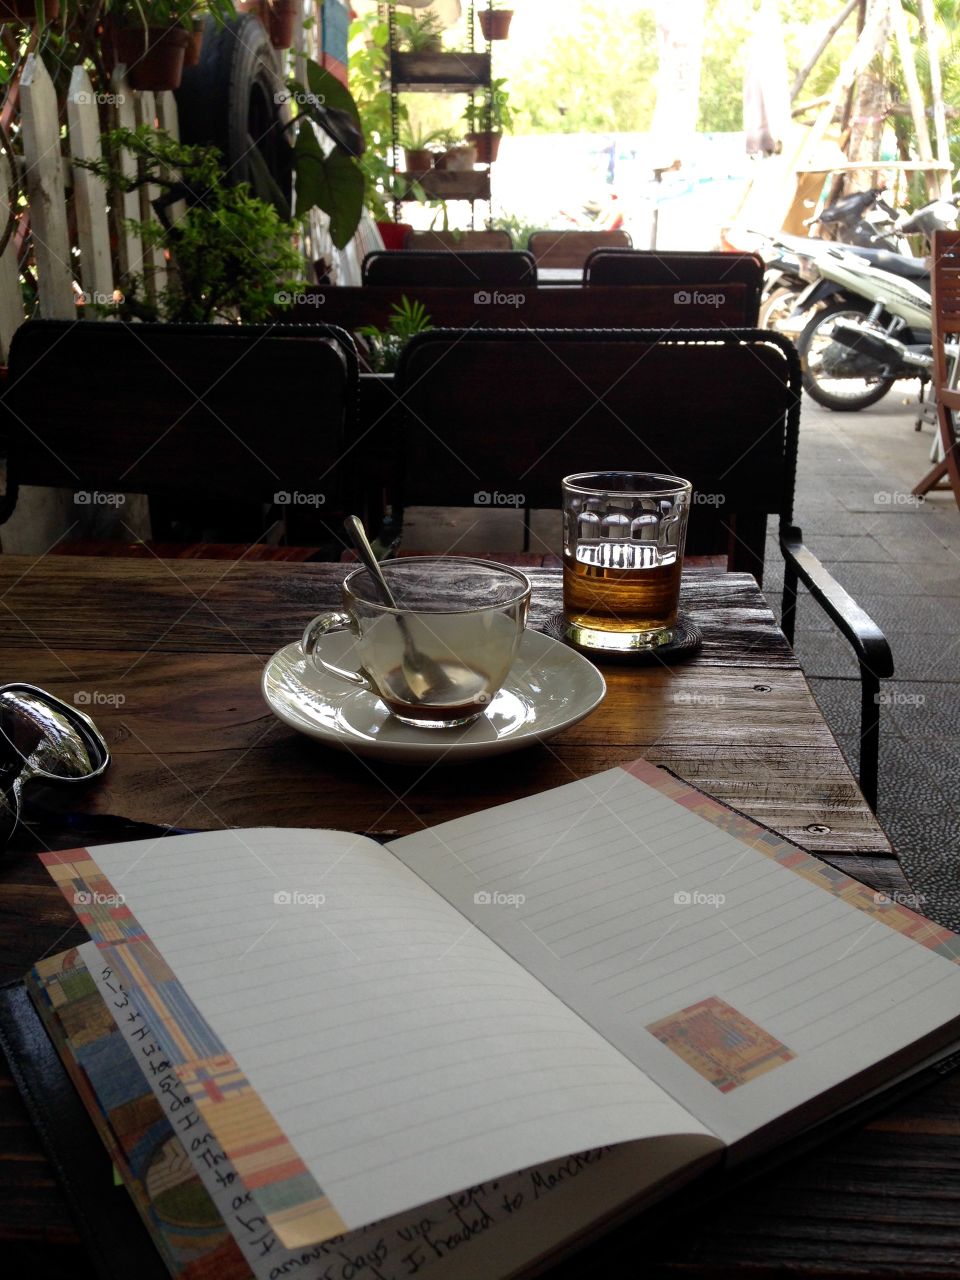 Coffe break in Saigon!